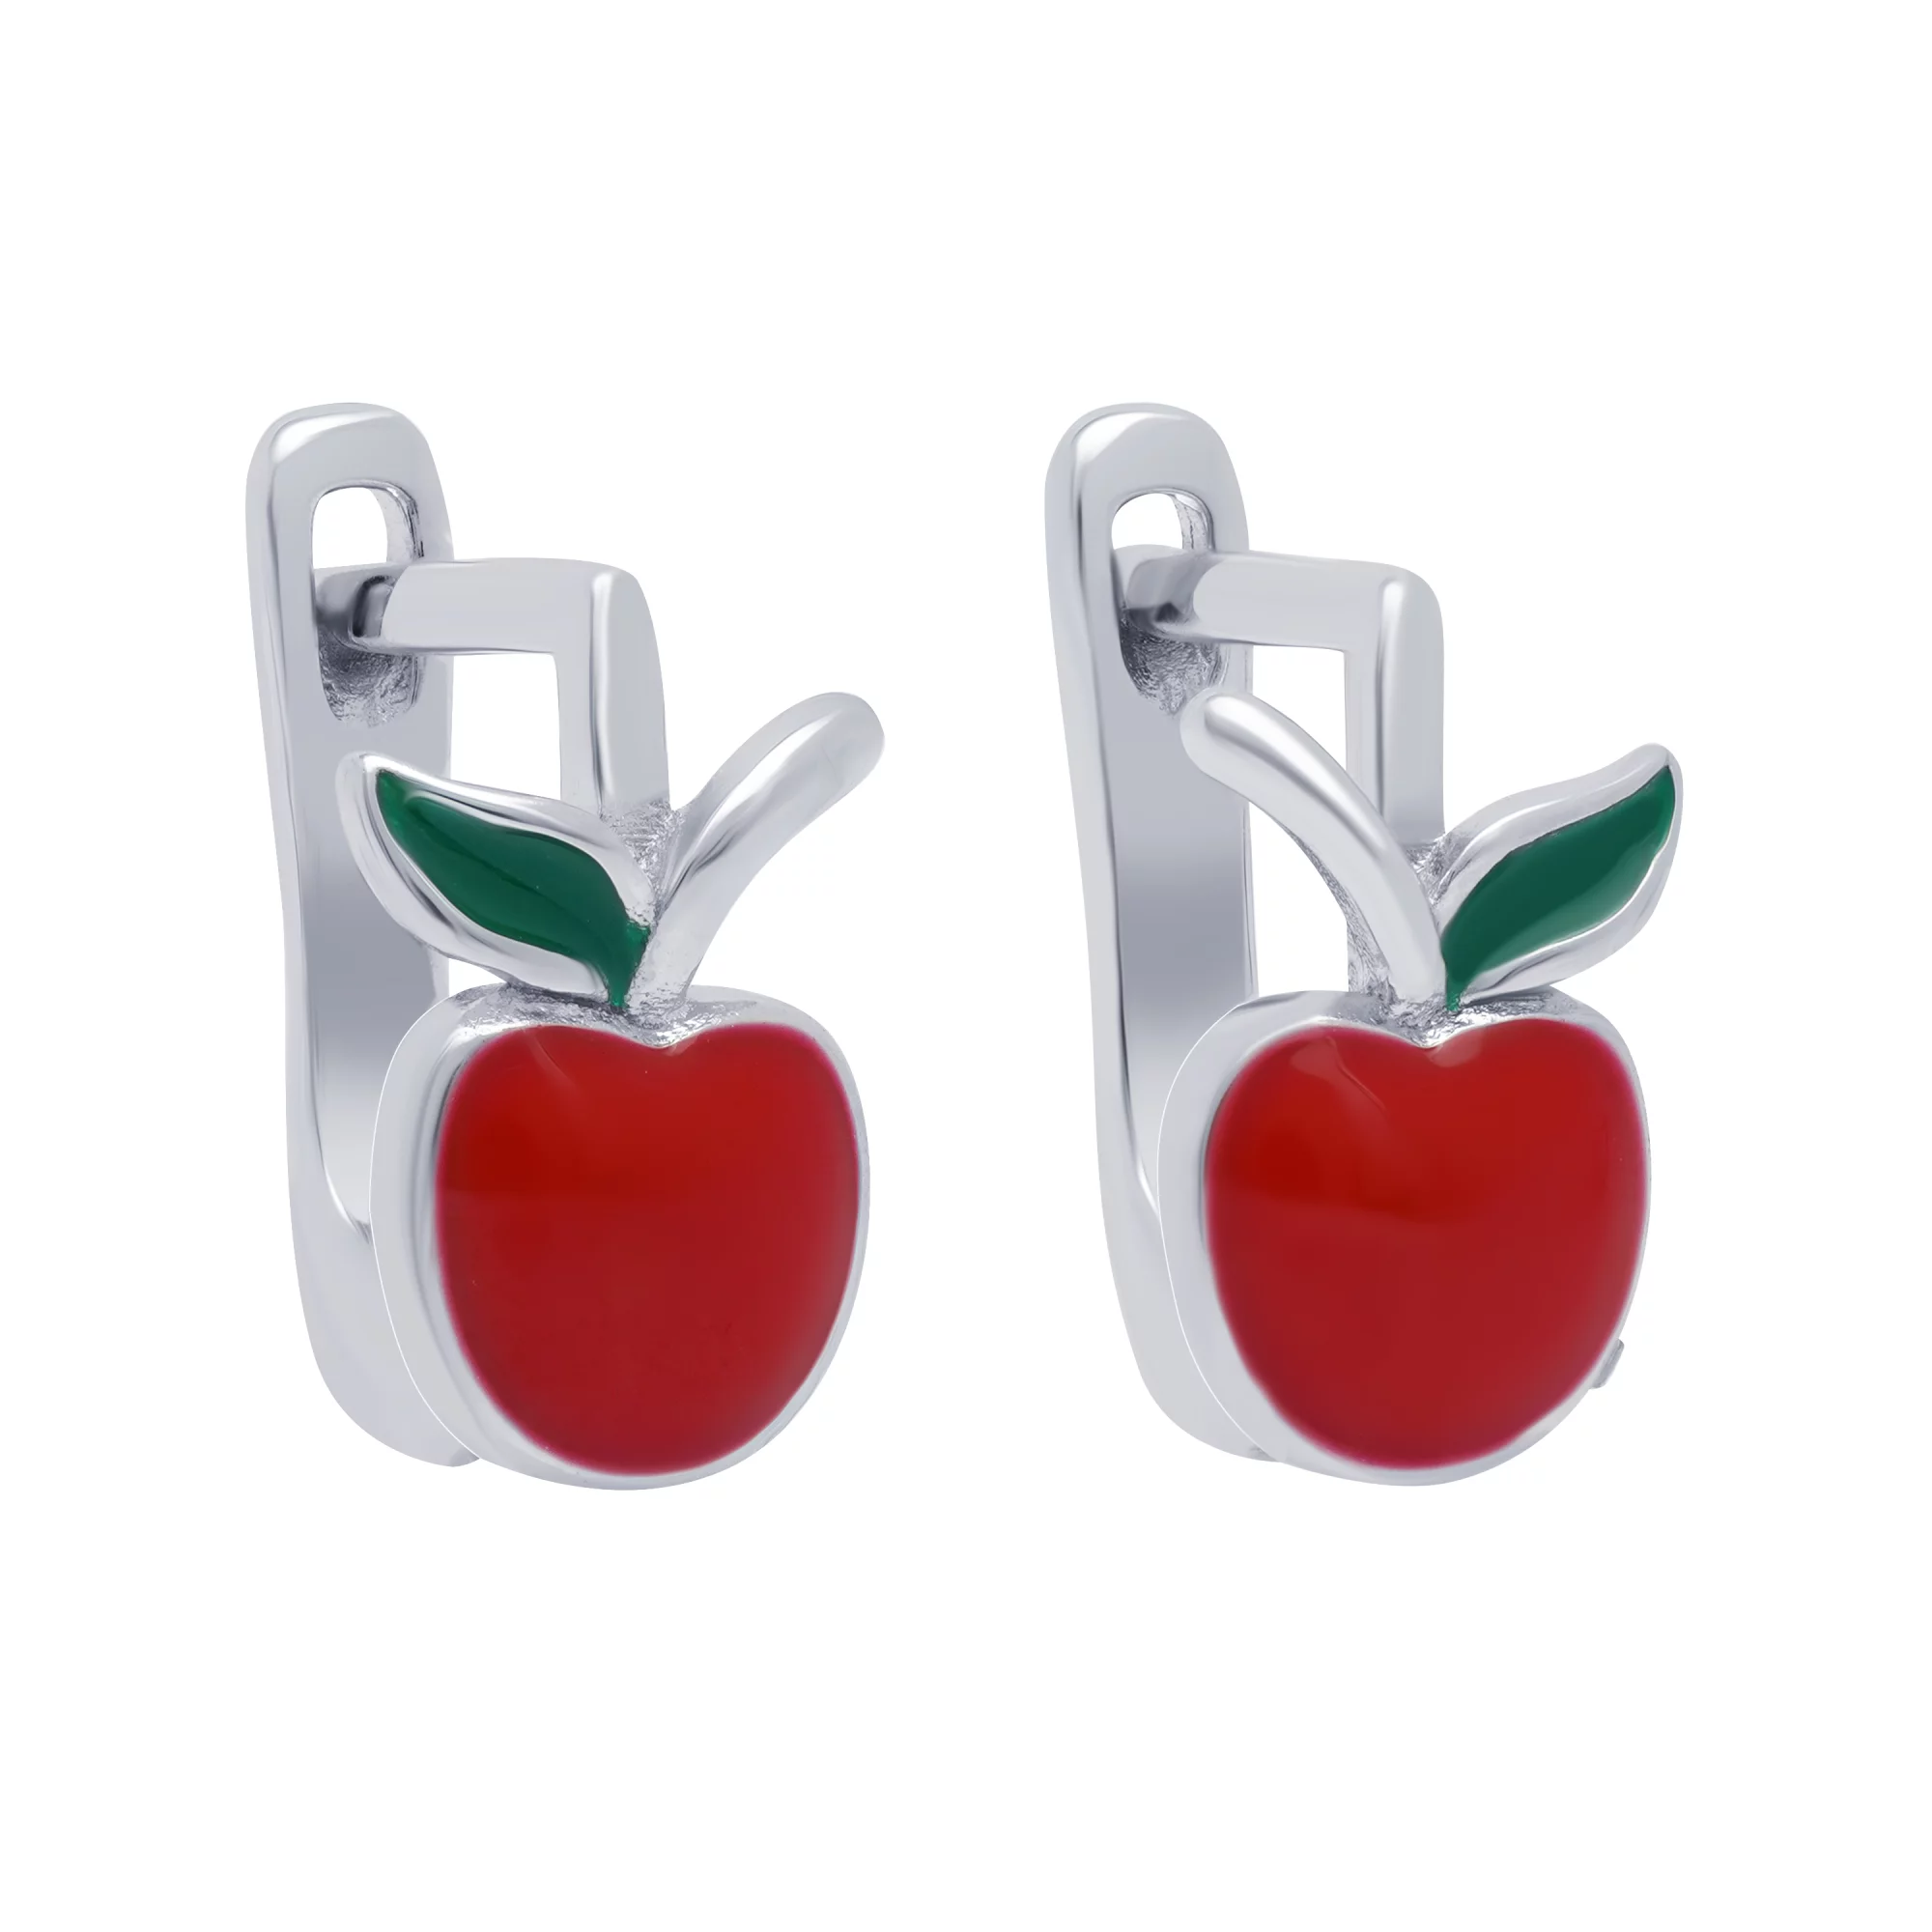 Срібні дитячі сережки "Яблуко" з емаллю - 1663969 – зображення 1